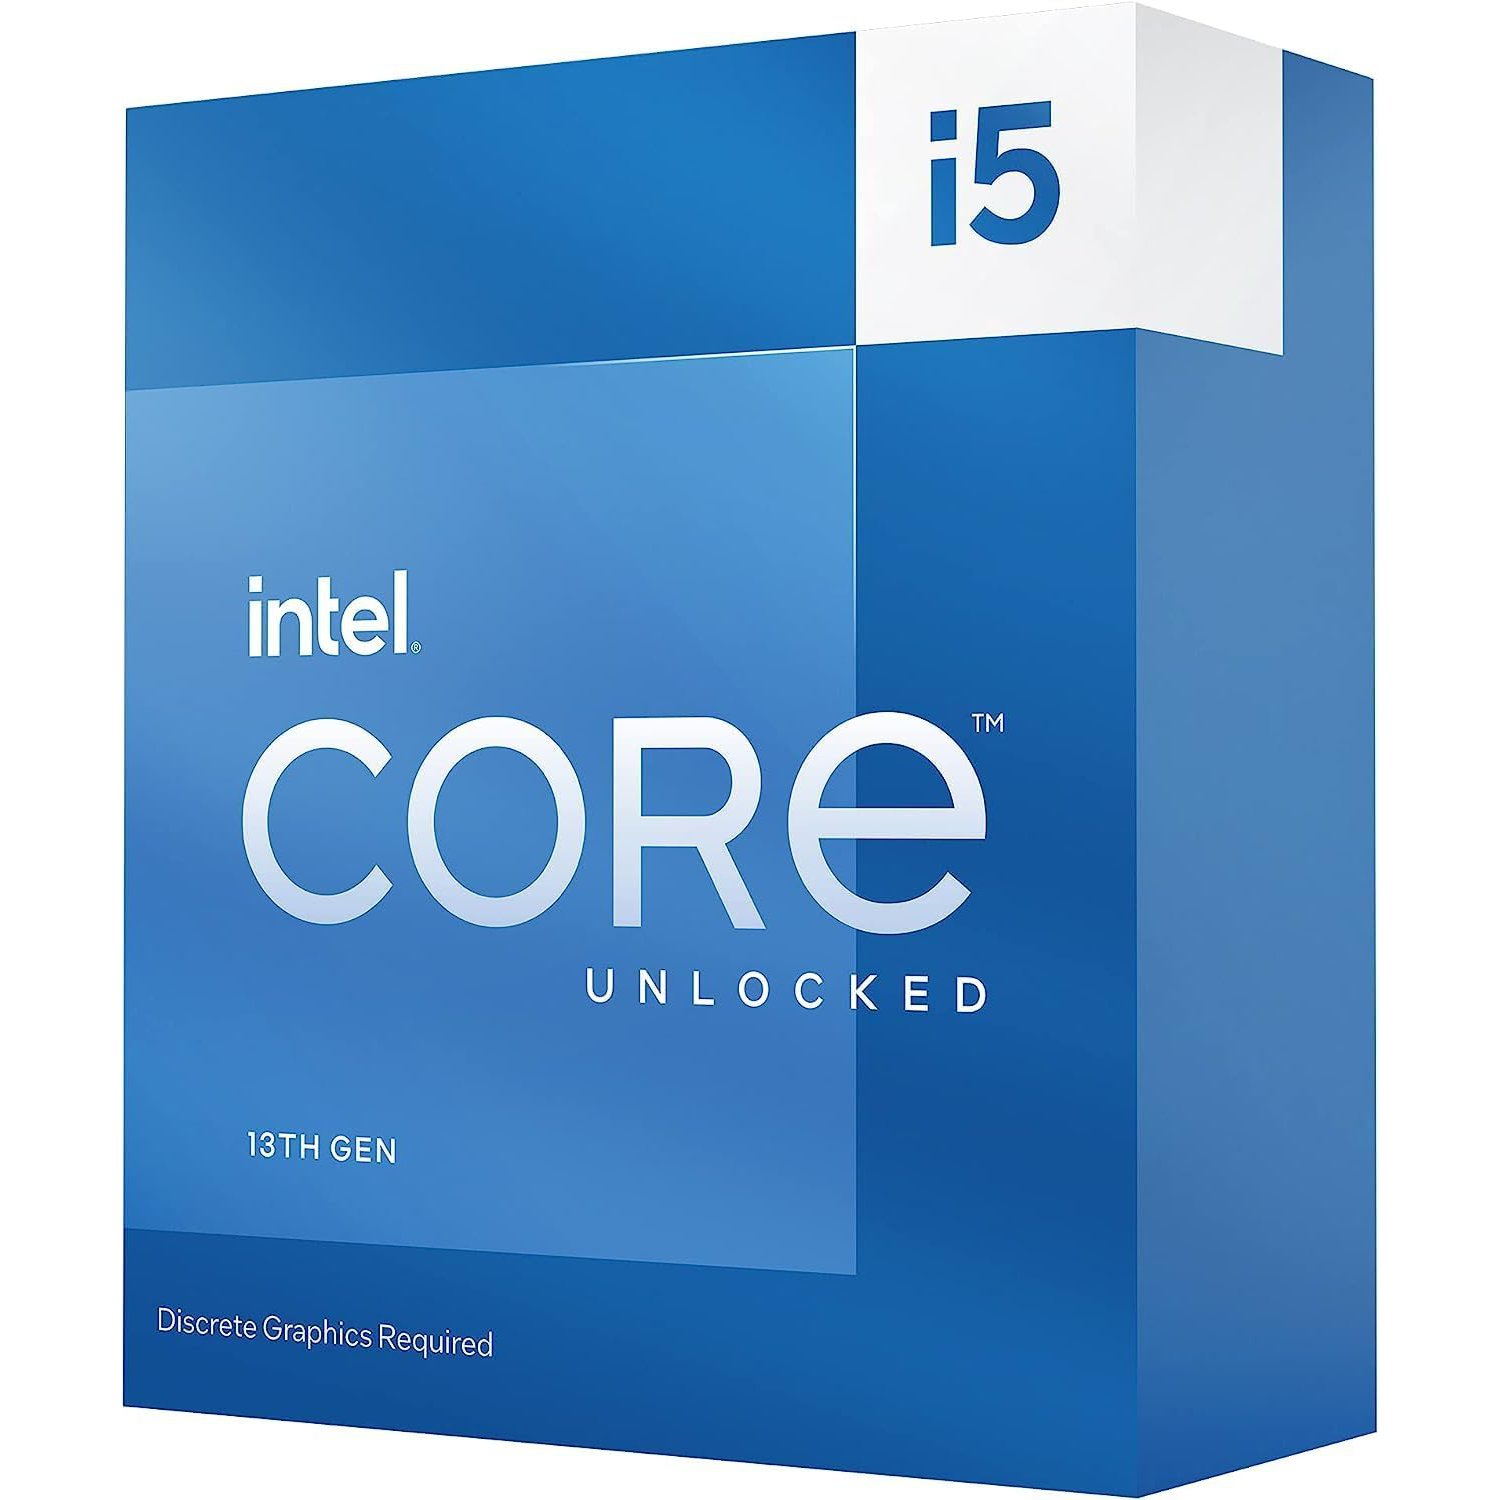 Intel Core i5-13600KFDesktop Processor 14 cores (6 P-cores + 8 E-cores) - Unlocked